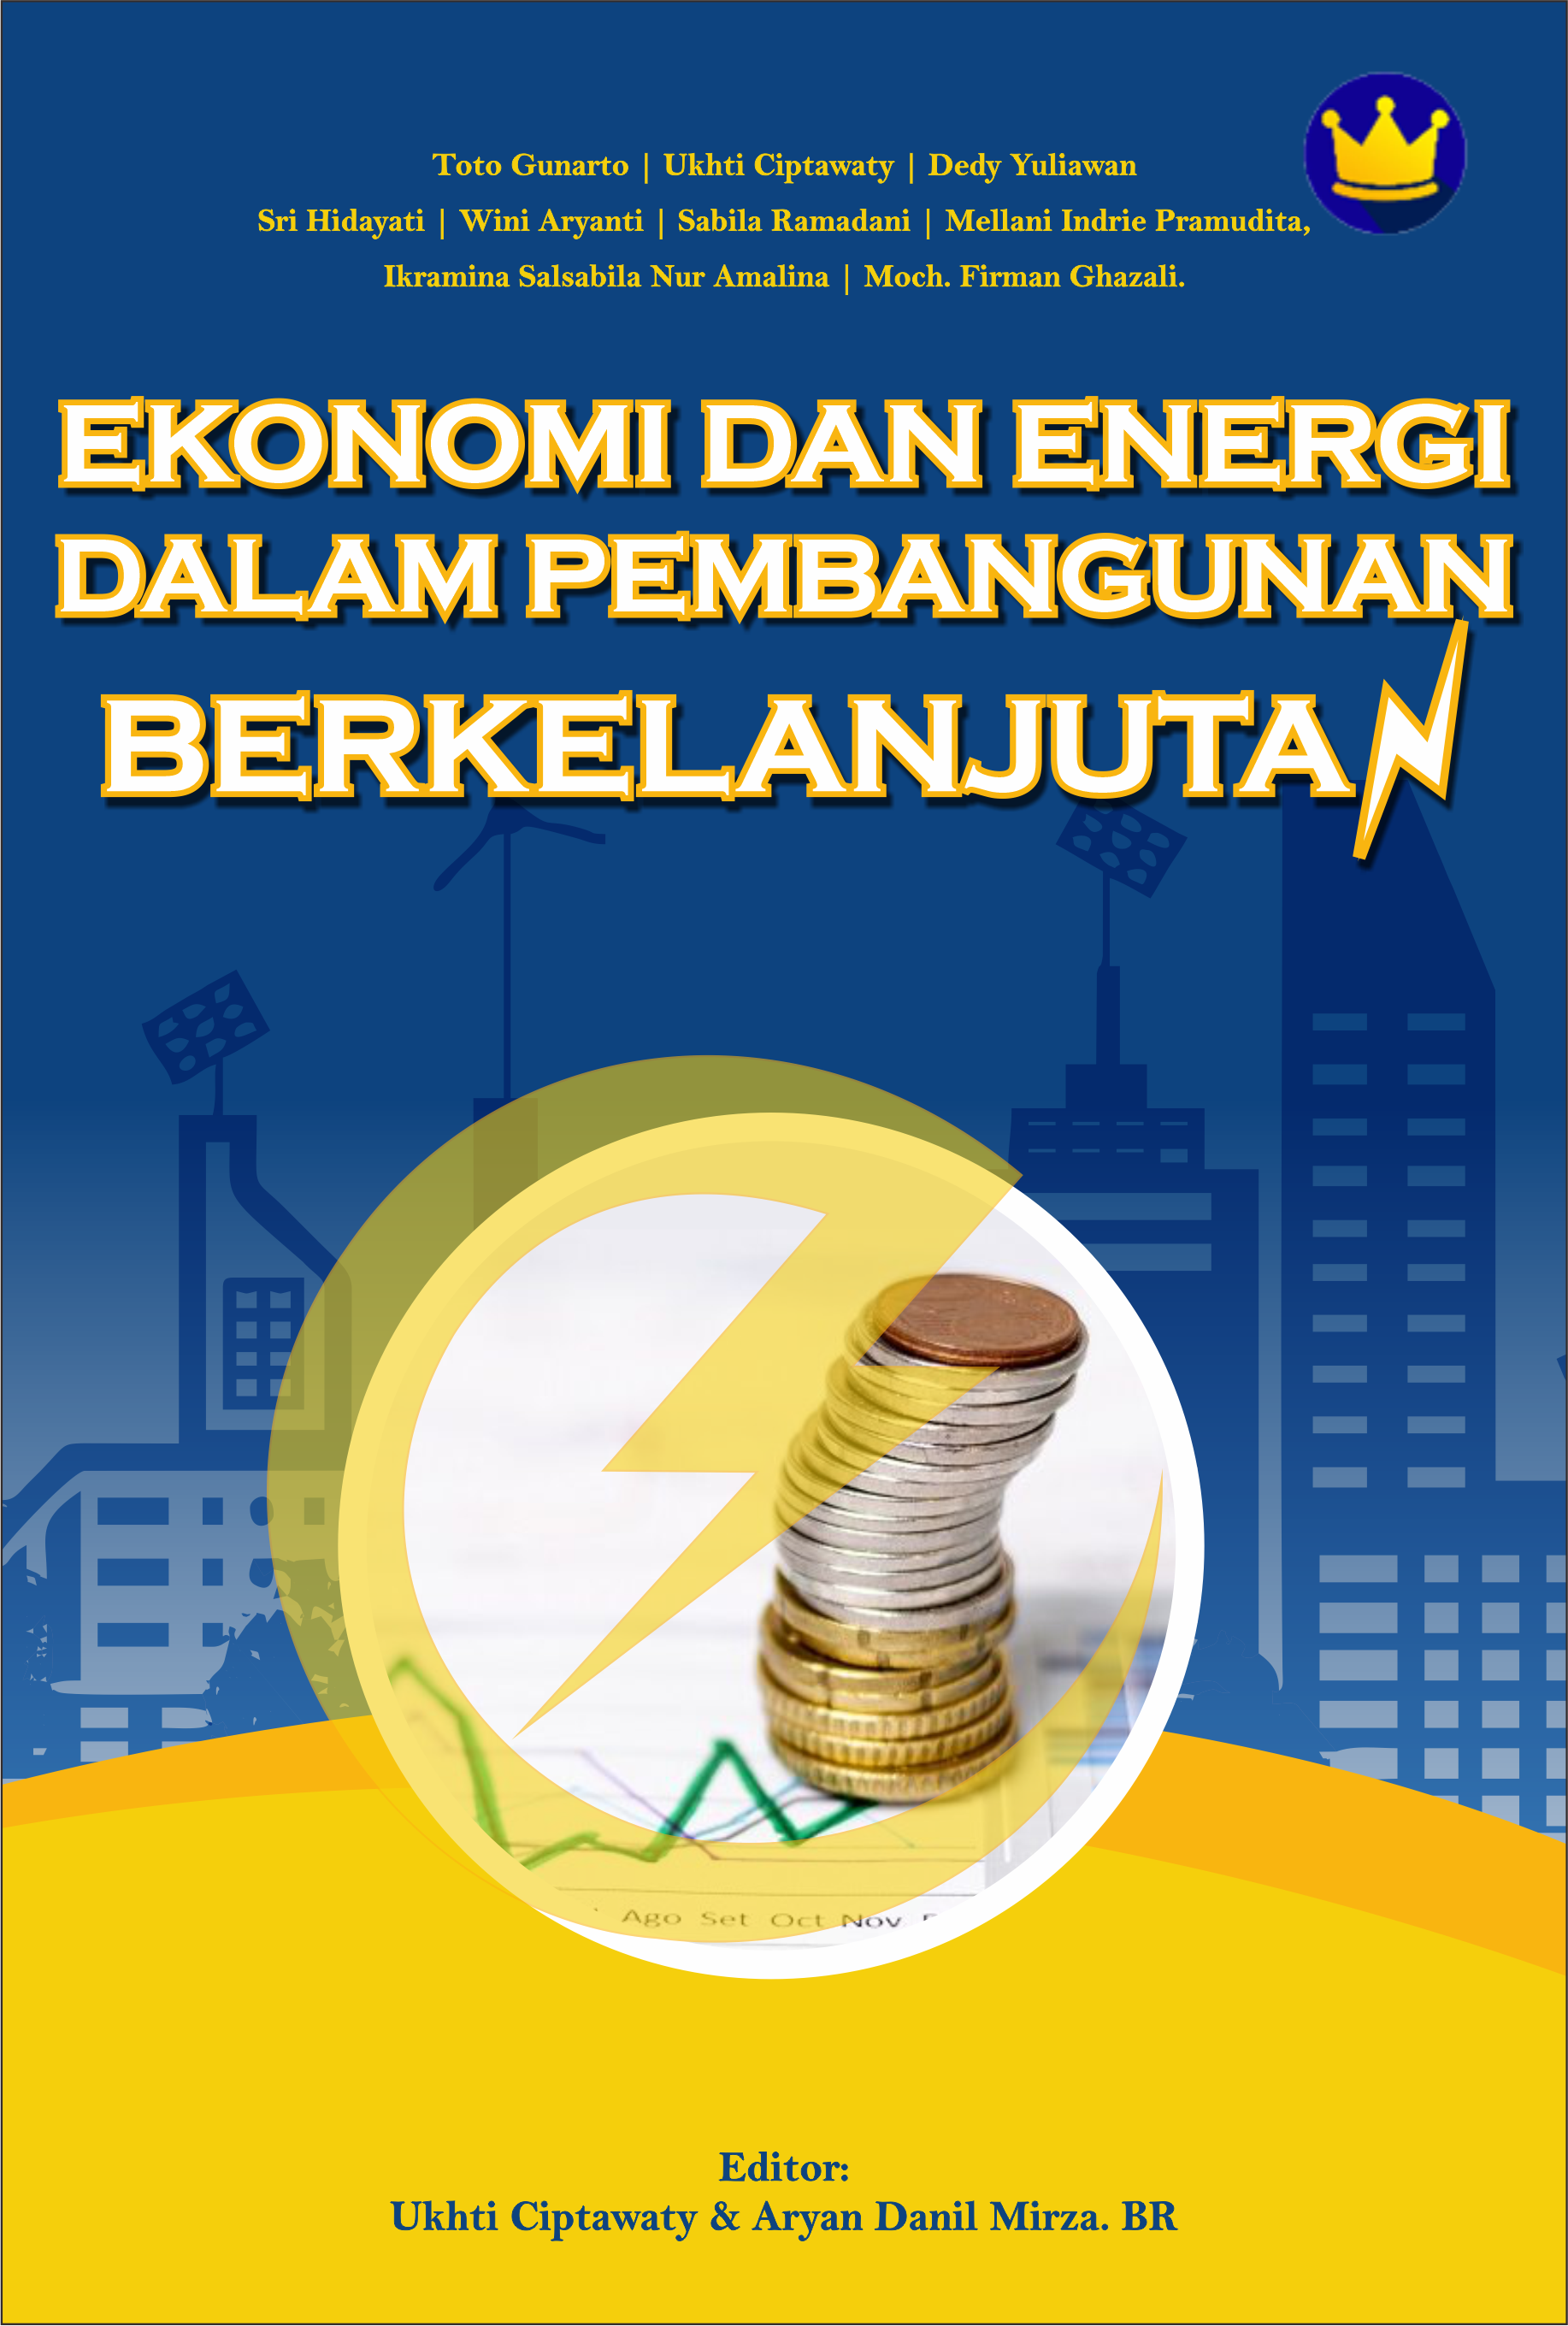 Ekonomi dan energi dalam pembangunan berkelanjutan [sumber elektronis]